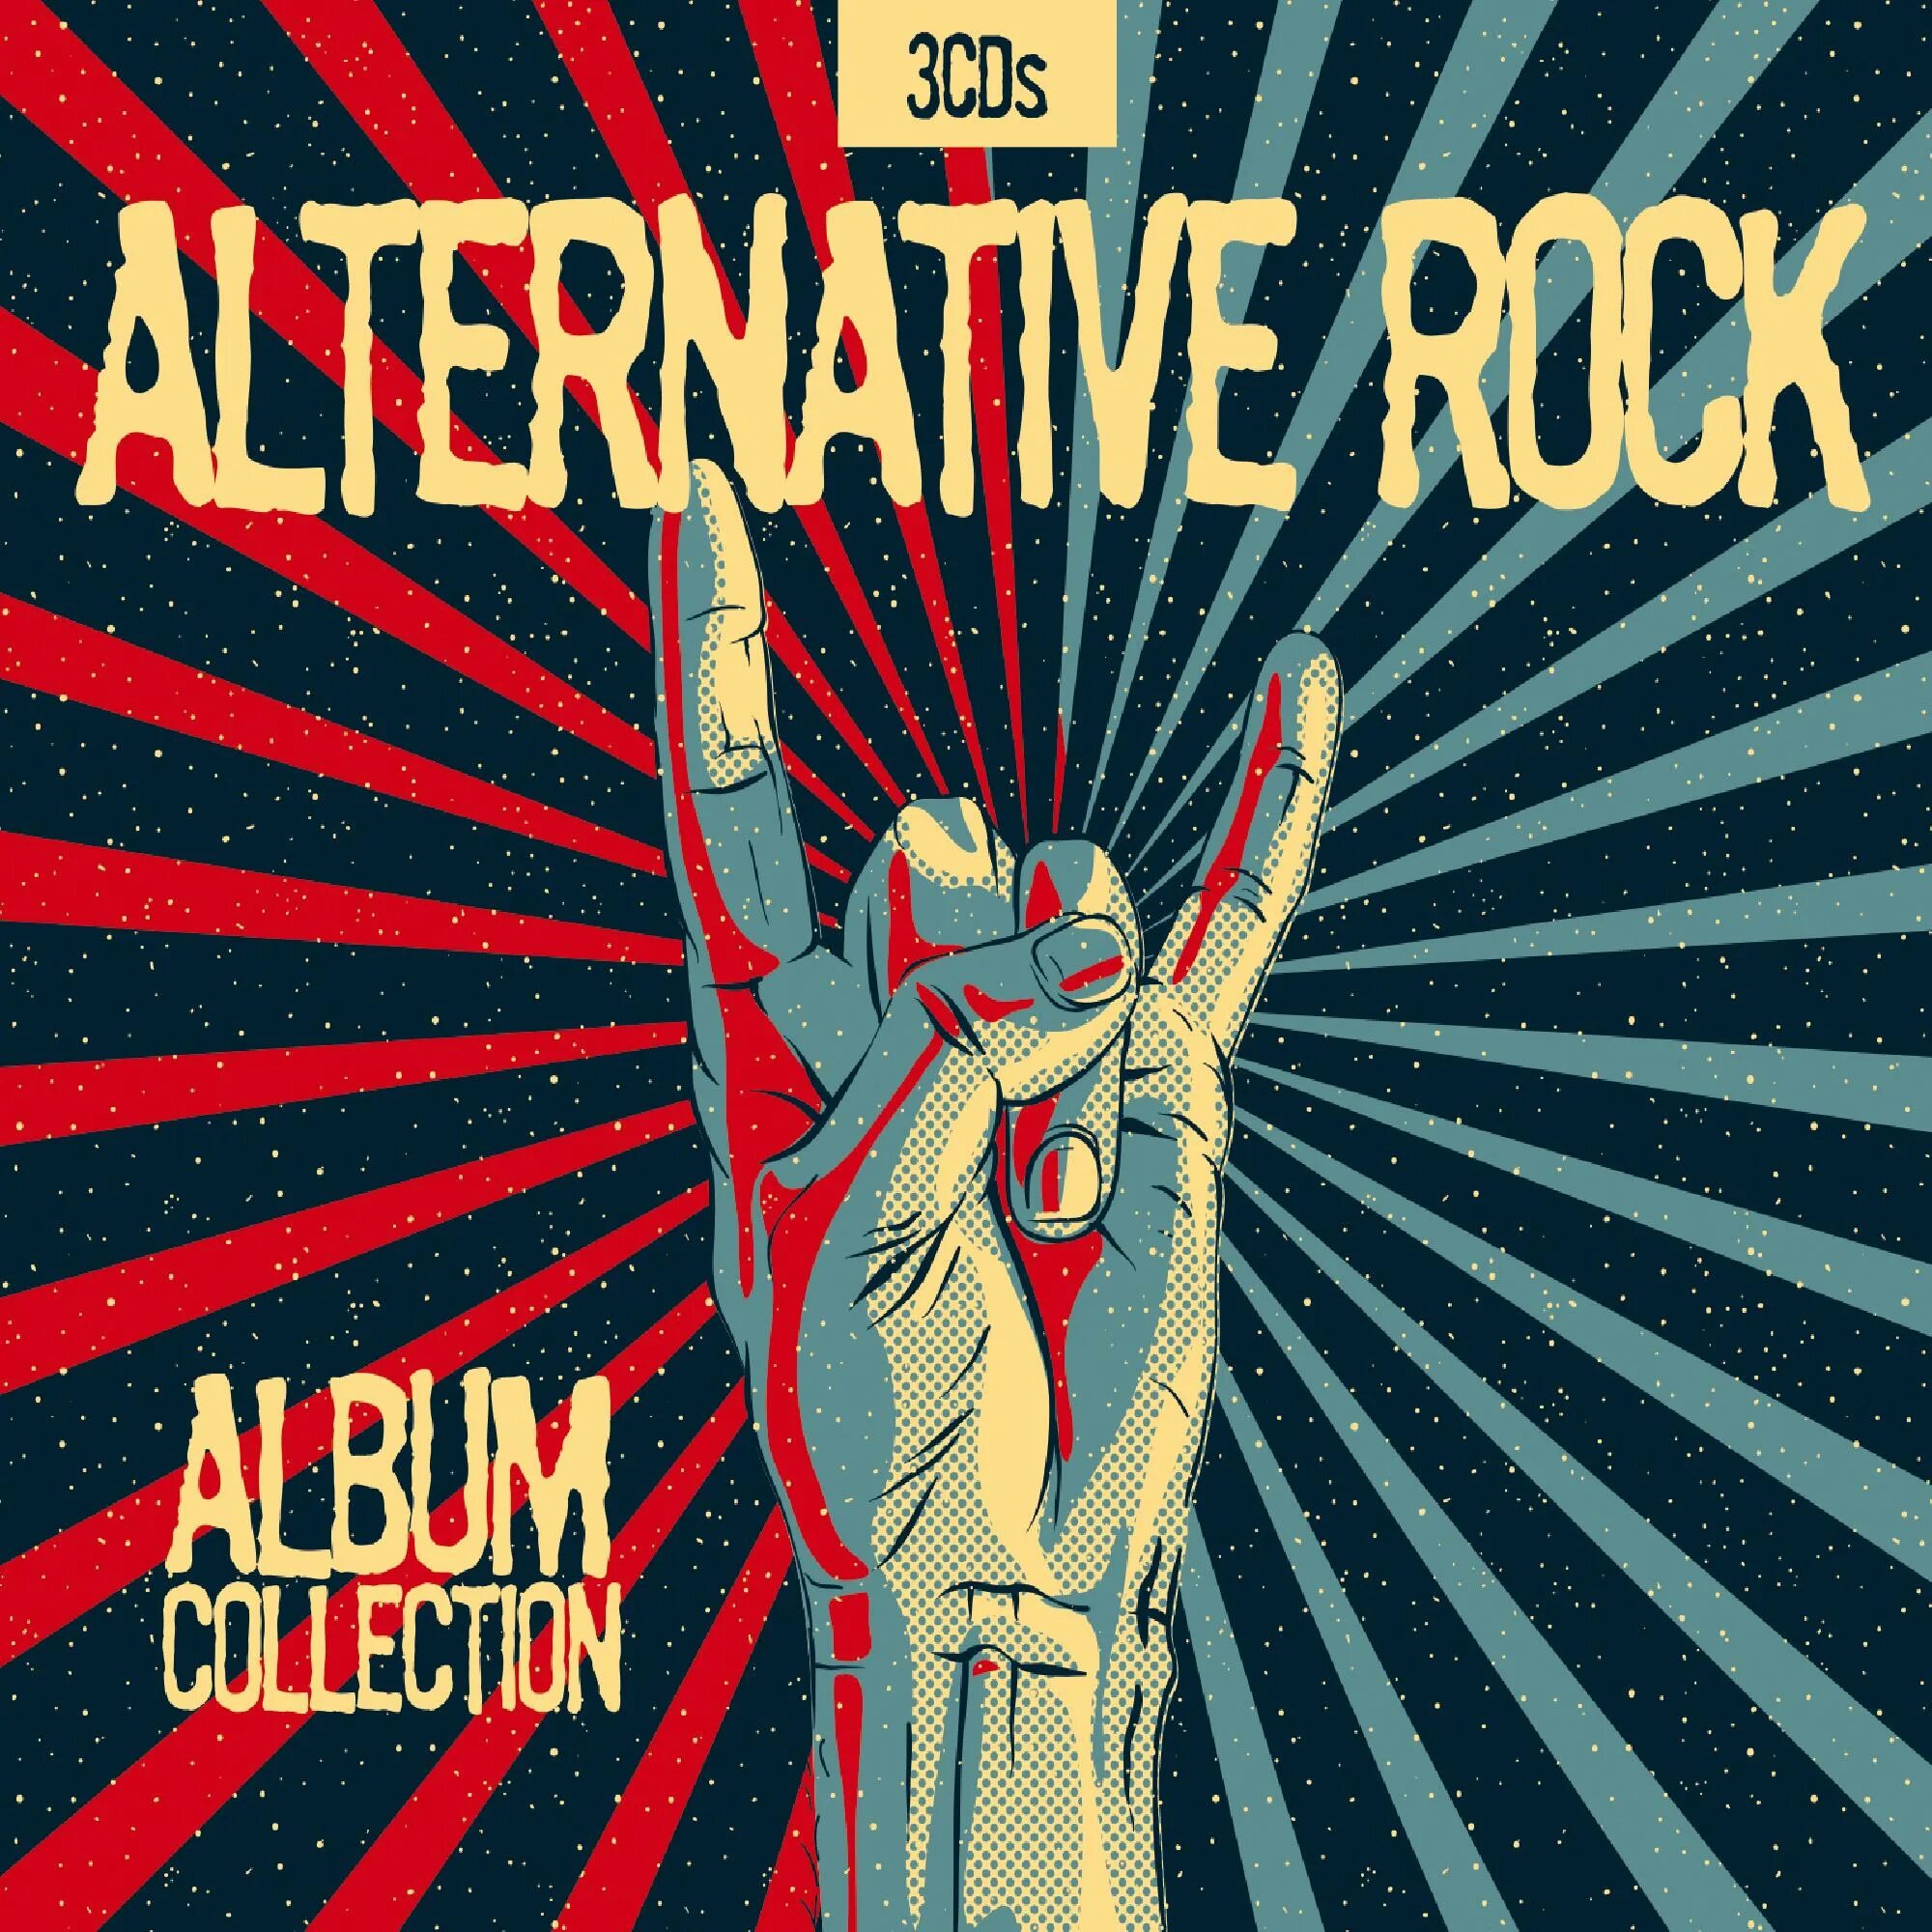 Рок обложка. Альтернативный рок. Альтернативная обложка. Alternative Rock обложка. Альтернативный рок лучшее